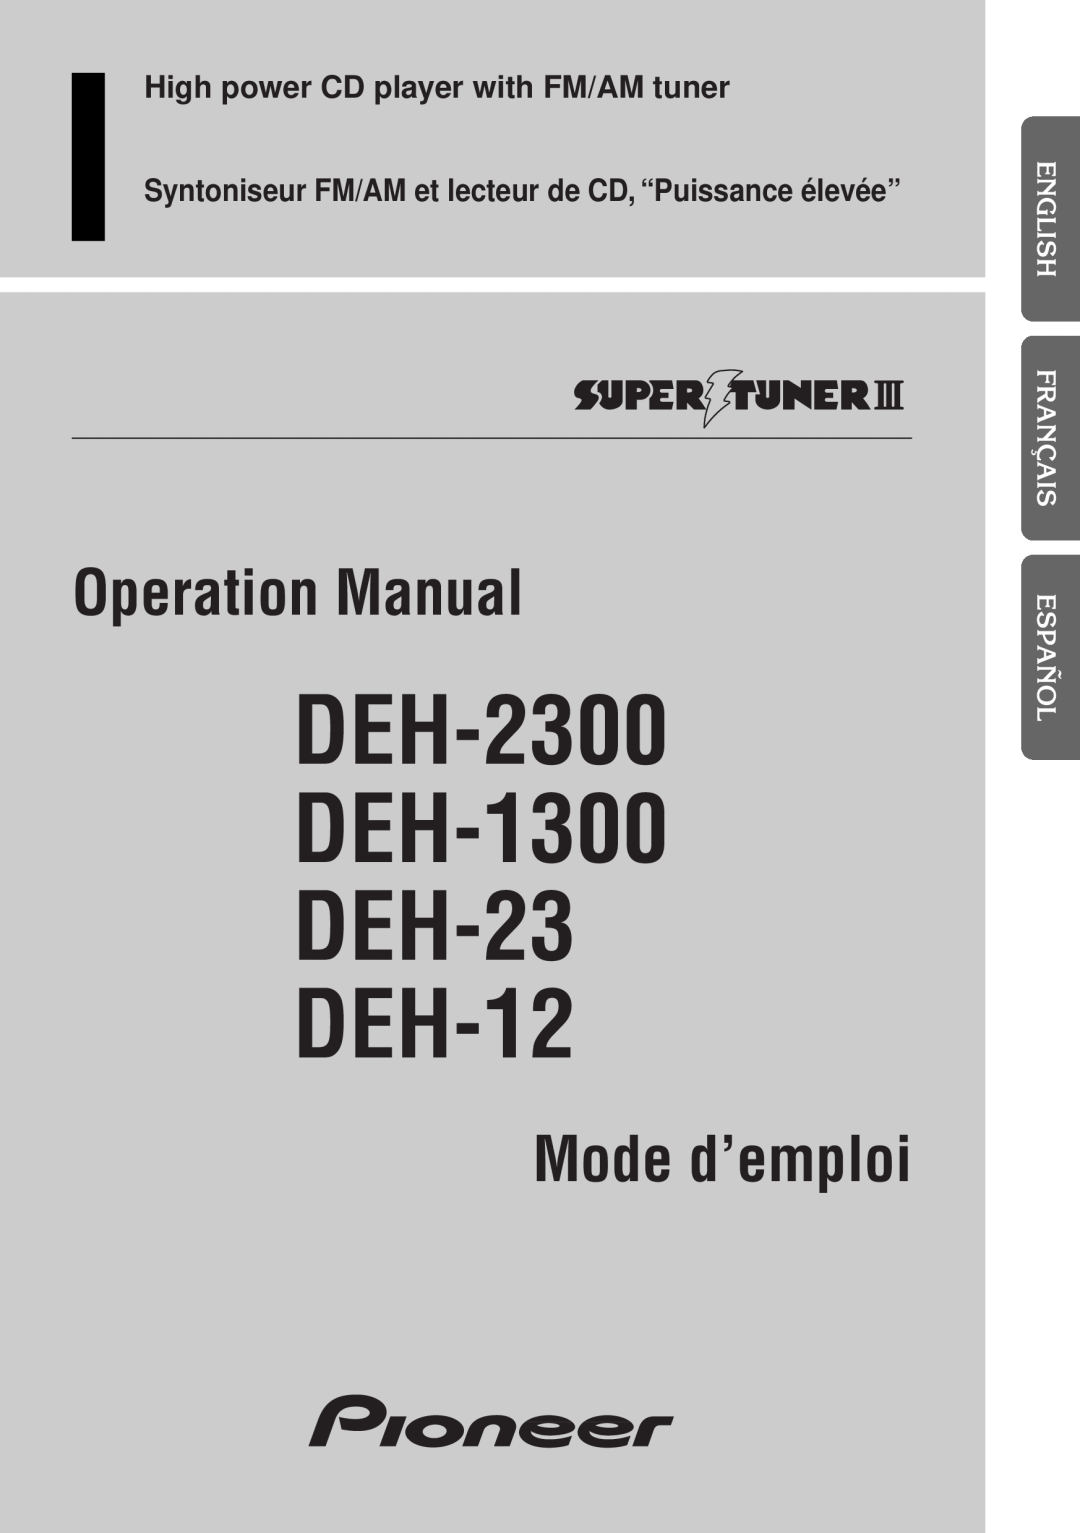 Pioneer operation manual English Français Español Français Italiano, Nederlands, DEH-2300 DEH-1300 DEH-23 DEH-12 